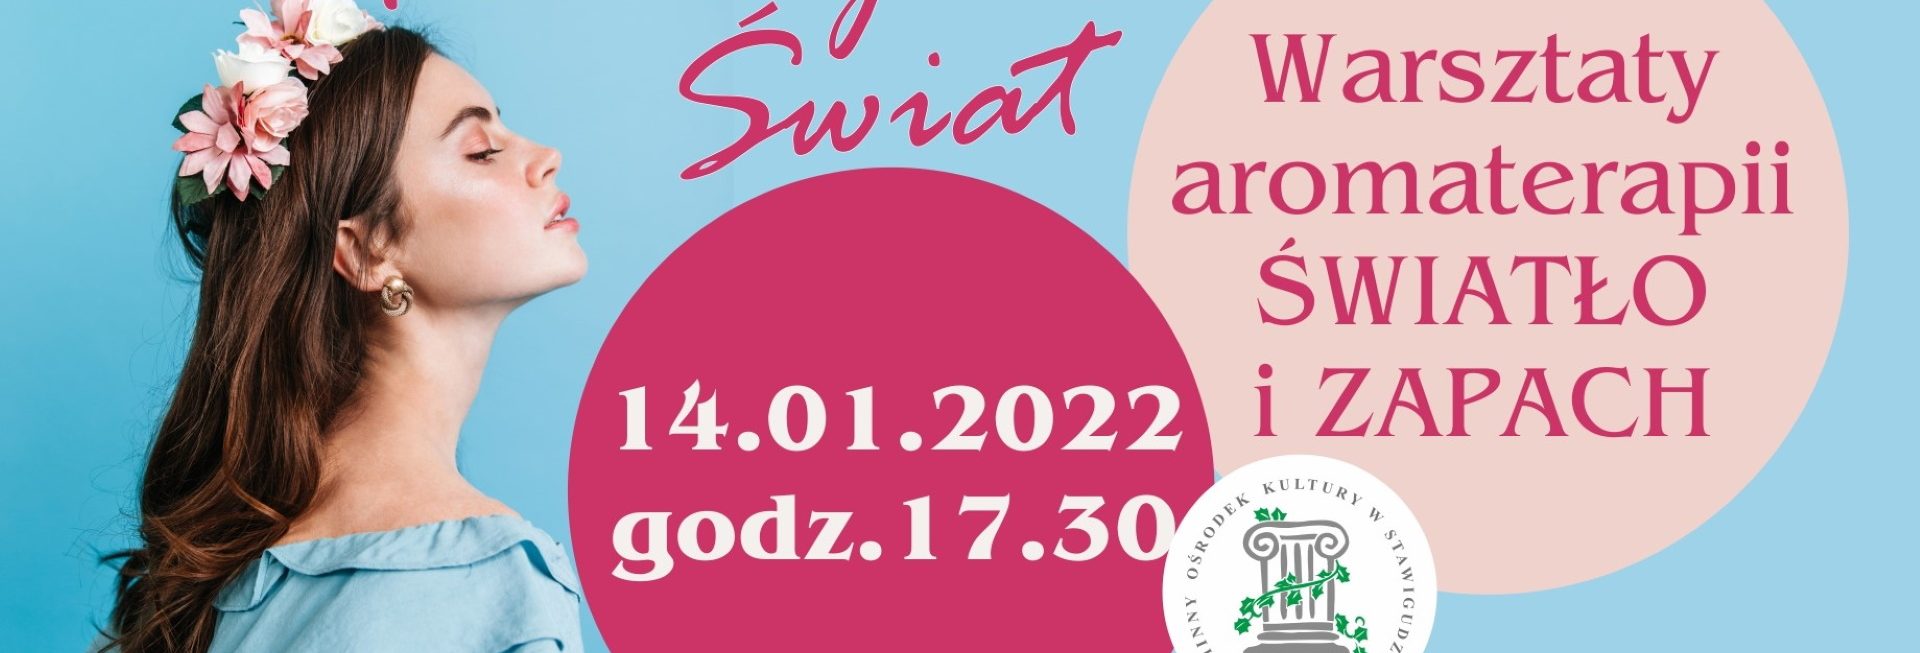 Plakat graficzny zapraszający do Stawigudy na "Kobiecy Świat" – Warsztaty aromaterapii Światło i Zapach Stawiguda 2022.